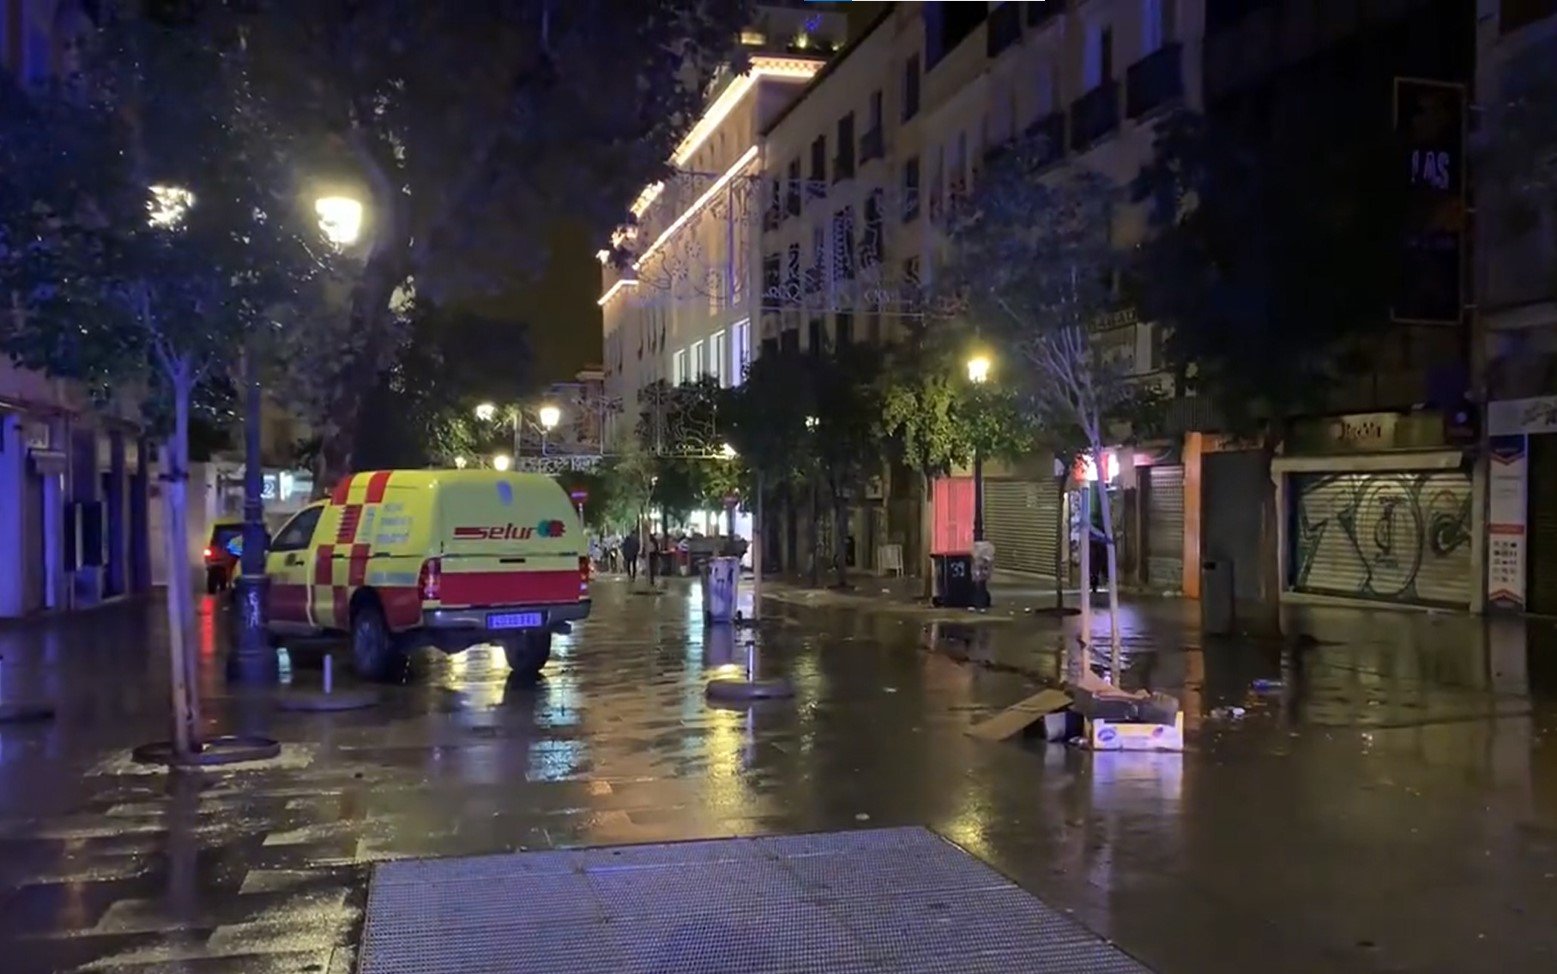 El cèntric carrer de Madrid on van donar dues punyalades un jove / EMERGÈNCIES MADRID